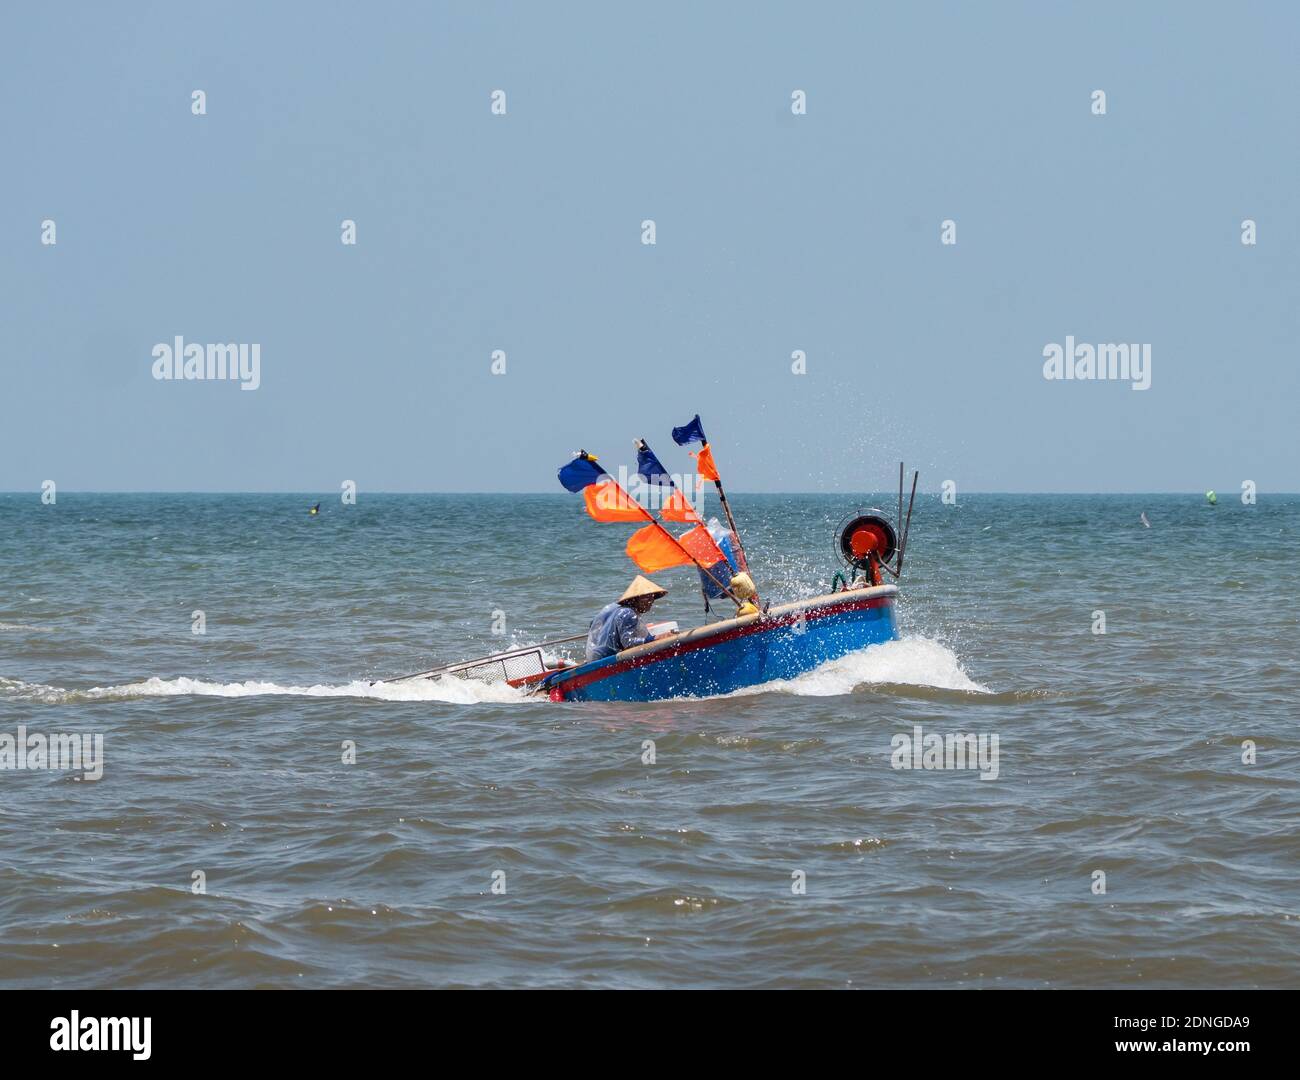 Bateau de pêche rond, typique de la région, au large de la côte de la plage de Bai Sau à Vung Tau dans la province de Bang Ria-Vung Tau, au sud du Vietnam. Banque D'Images